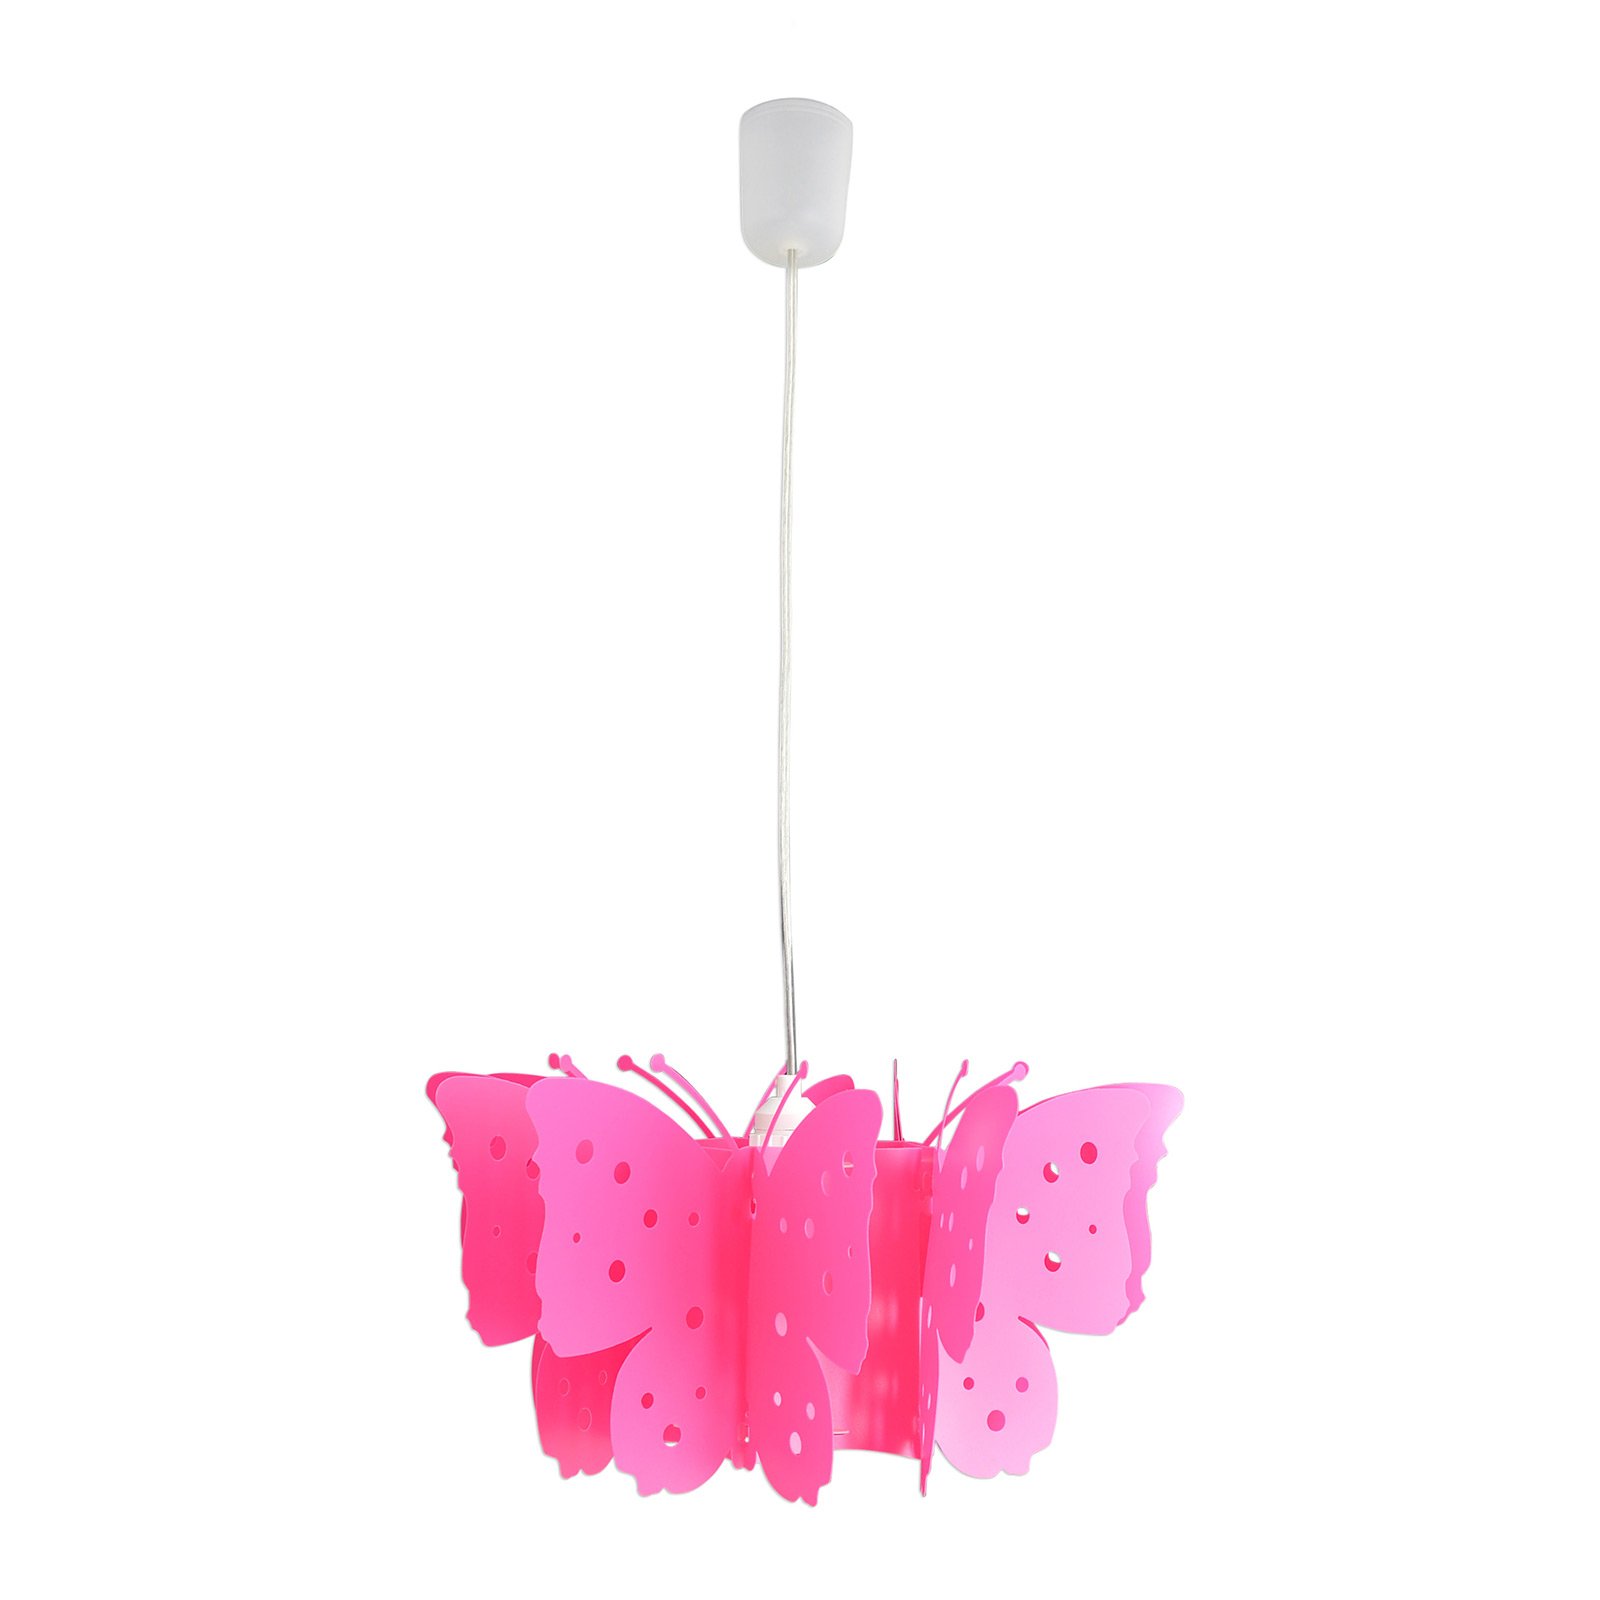 Hanglamp Kizi in pink met vlinders